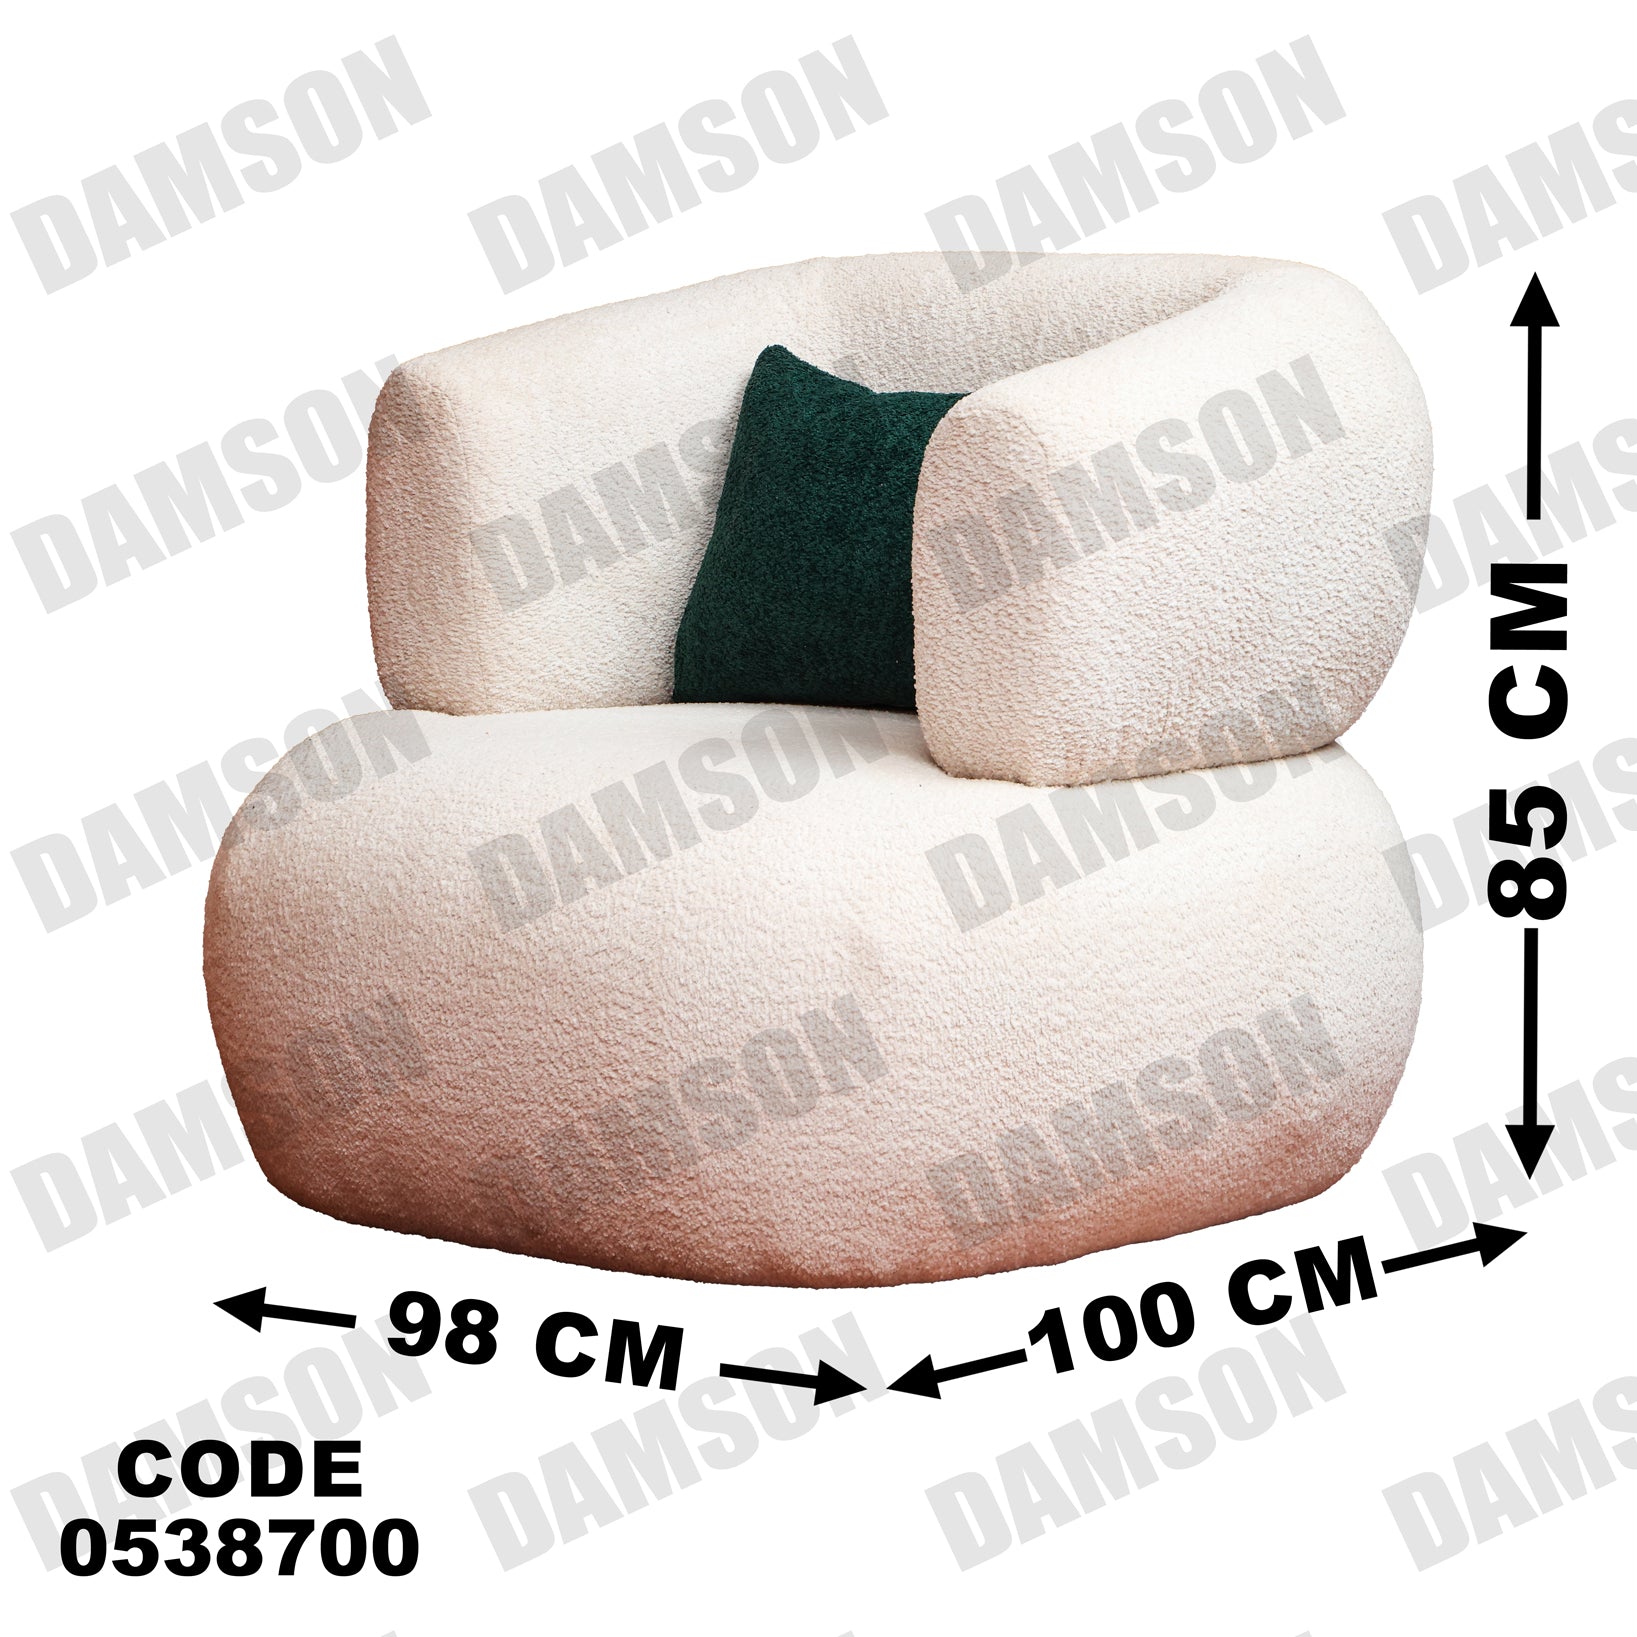 فوتية 1-387 - Damson Furnitureفوتية 1-387